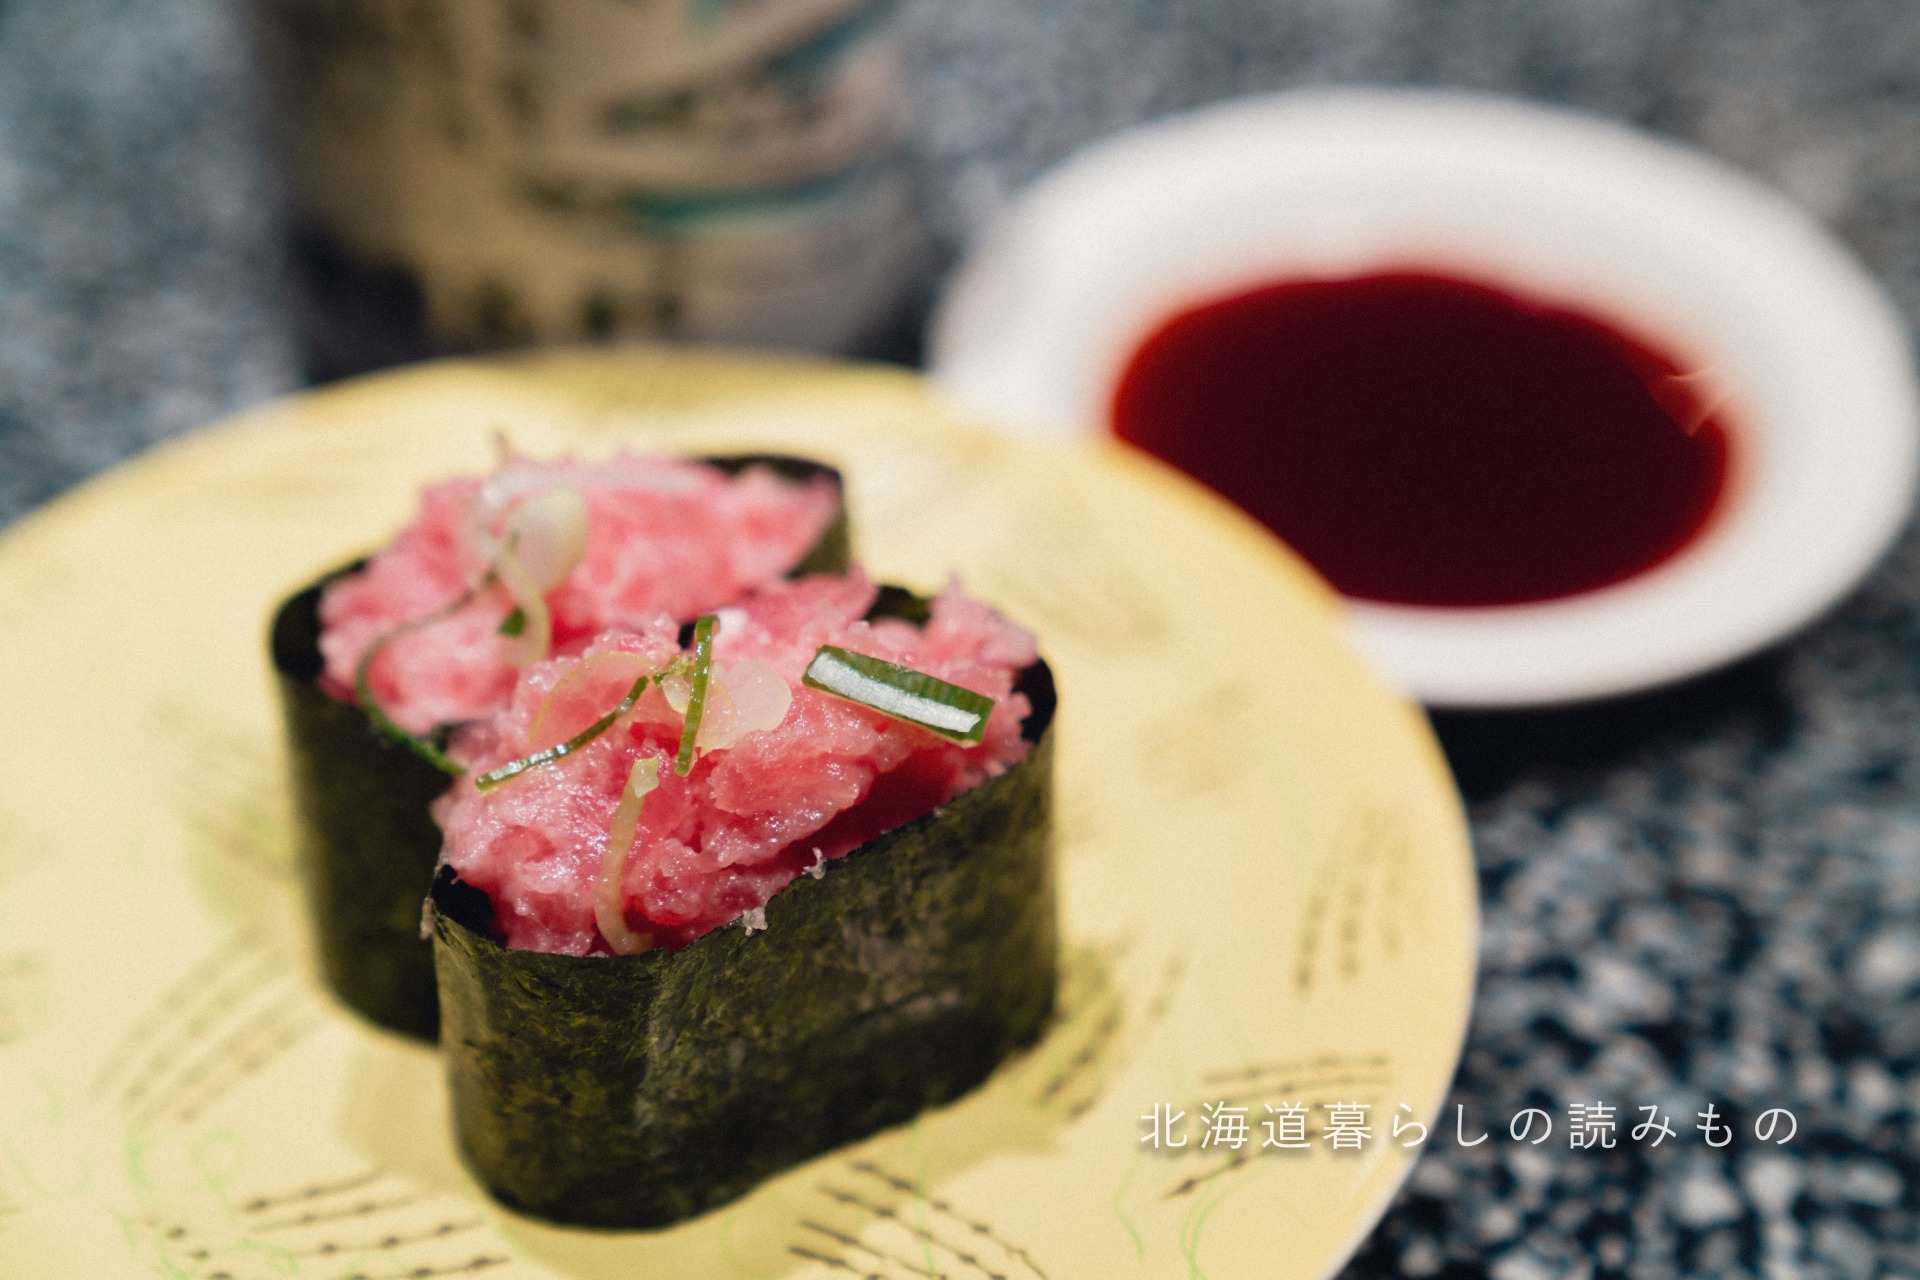 回転寿司 根室花まるのメニュー「ねぎとろ」の写真